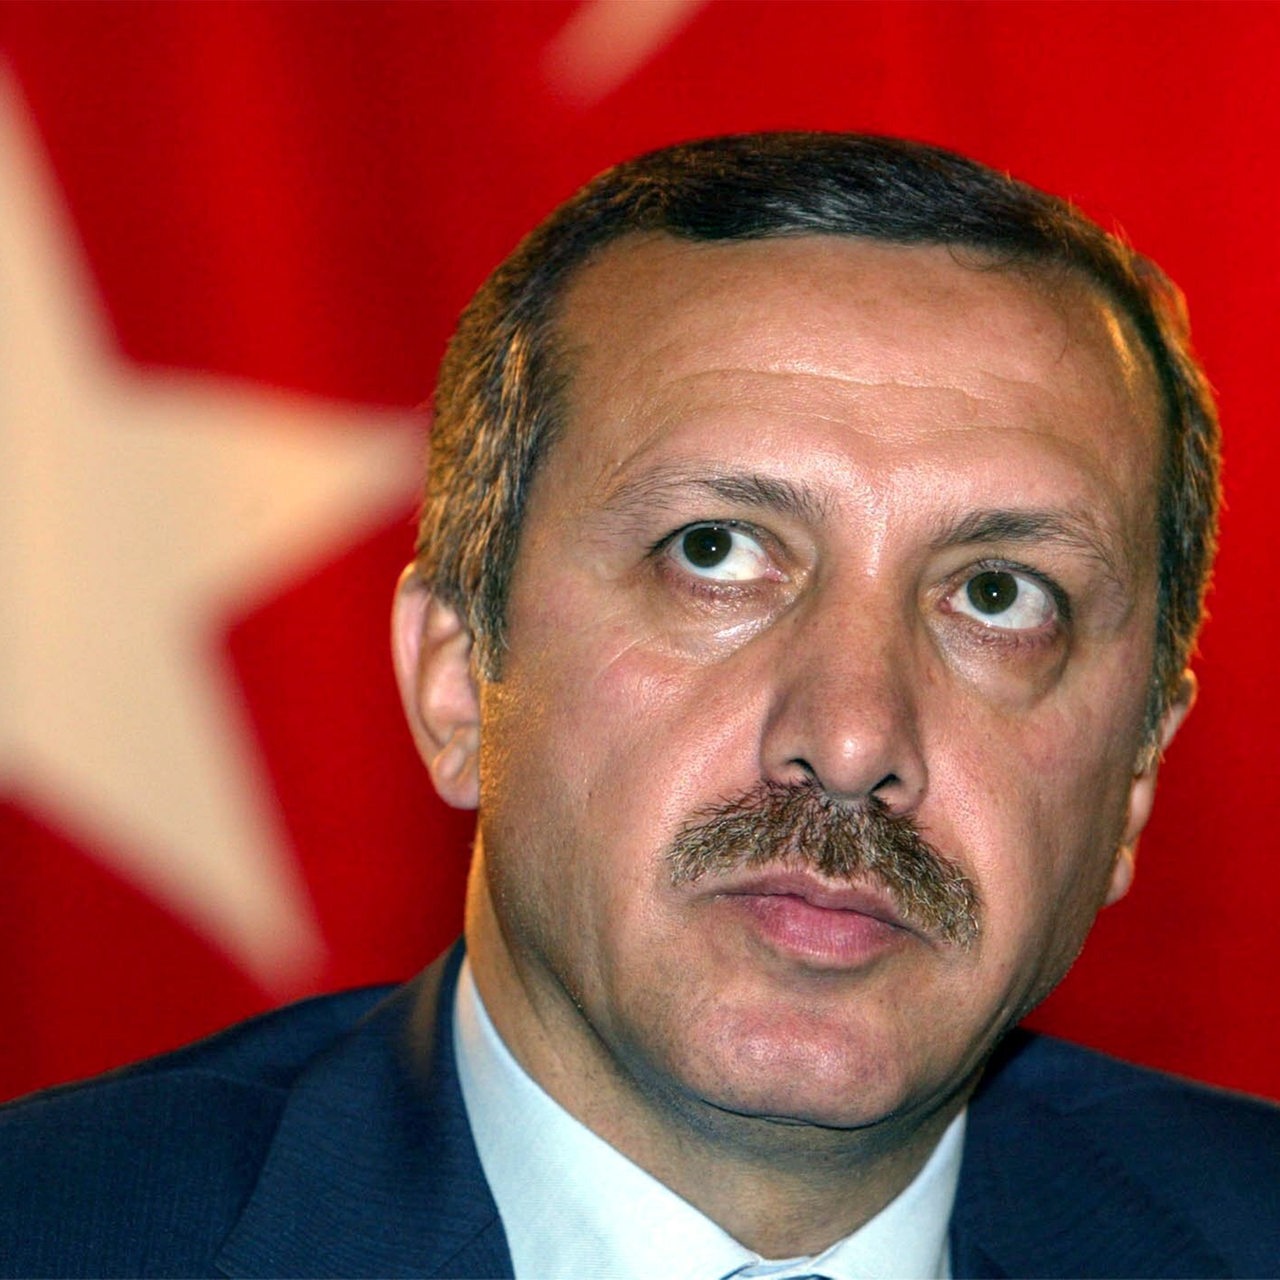 Tayyip Erdogan, Führer der islamisch-konservativen Gerechtigkeits- und Entwicklungspartei (AKP), aufgenommen am 13.11.2002